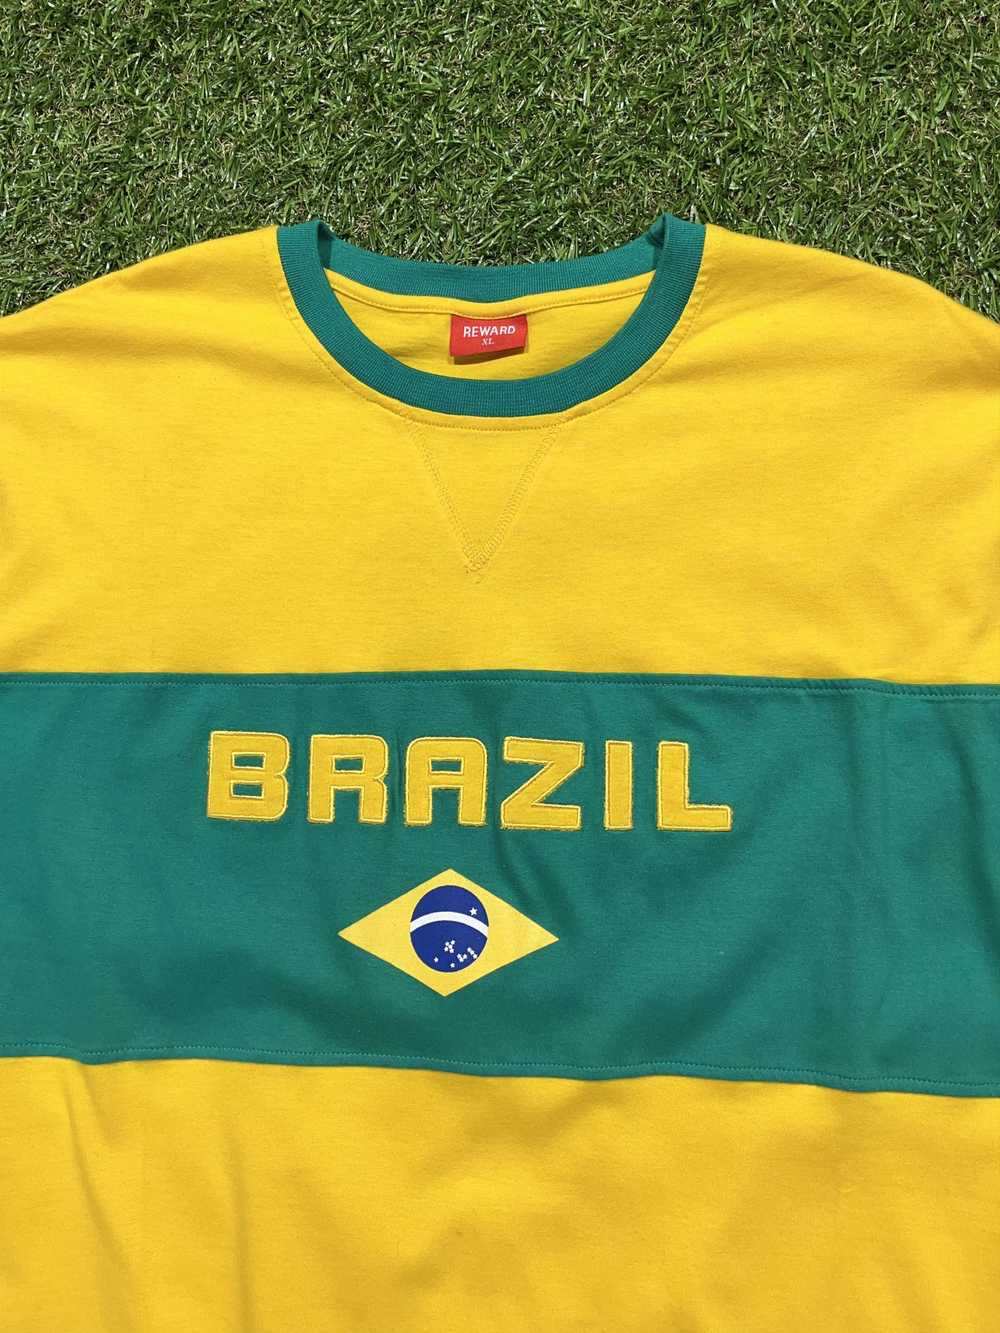 Soccer Jersey × Streetwear × Vintage Rare Vintage… - image 3